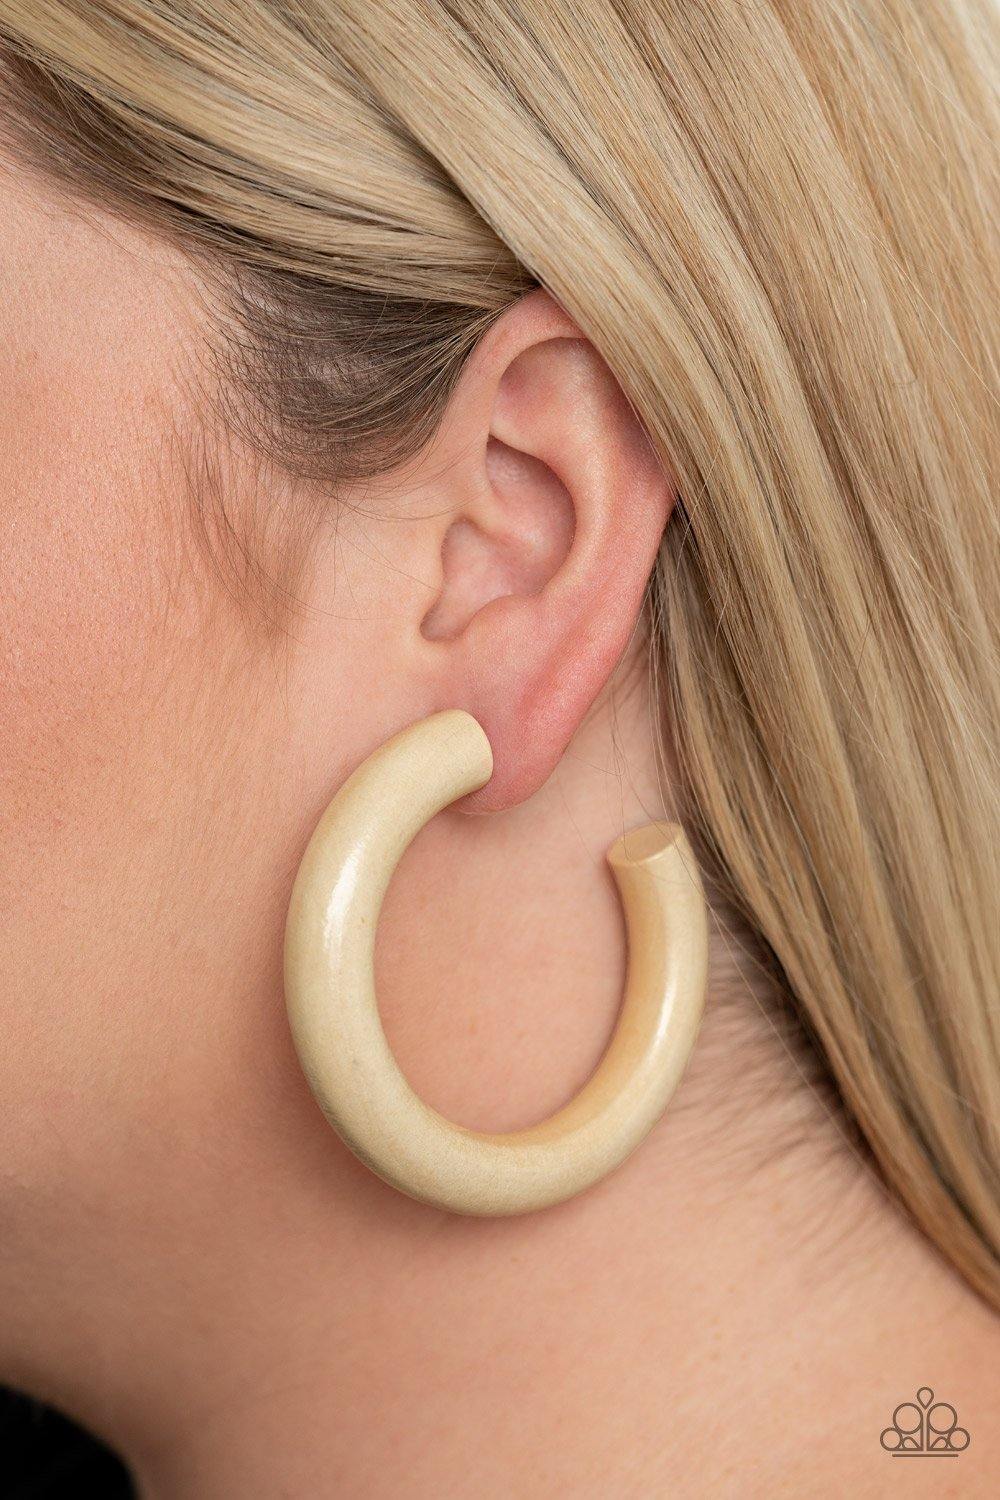 I WOOD Walk 500 Miles White Earrings - Nothin' But Jewelry by Mz. Netta